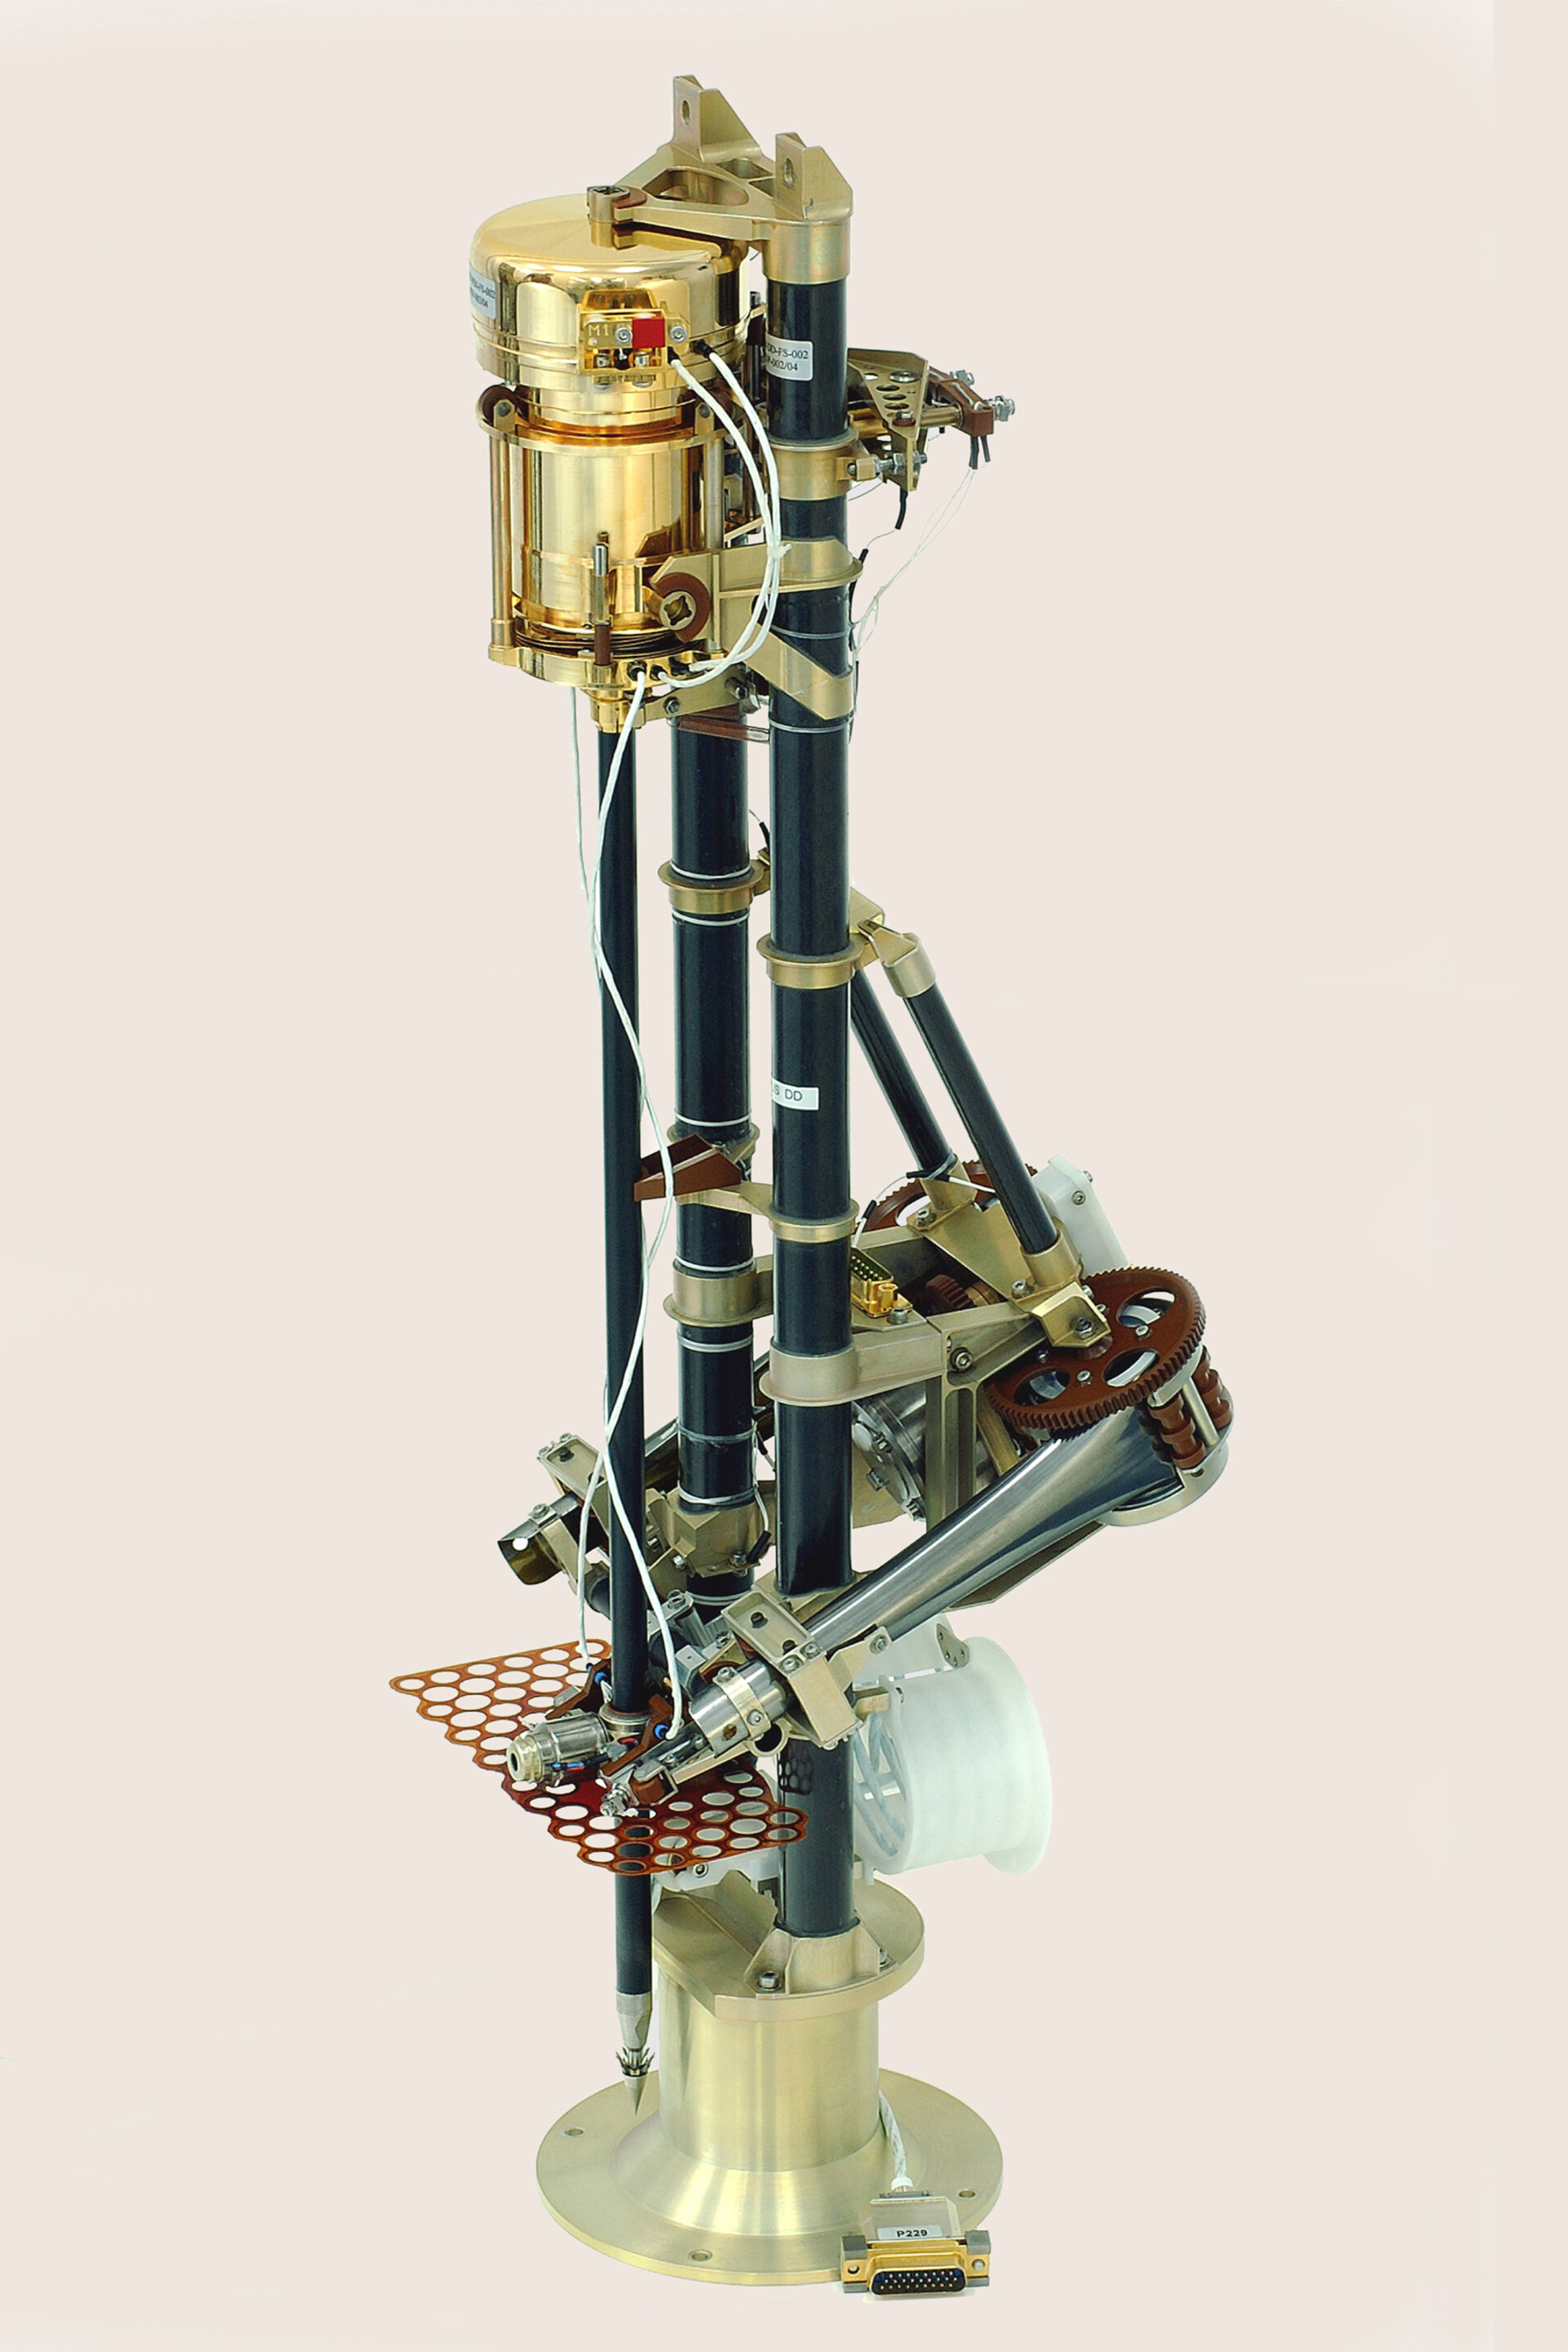 Instrument MUPUS misji Rosetta. Źródło: CBK PAN.